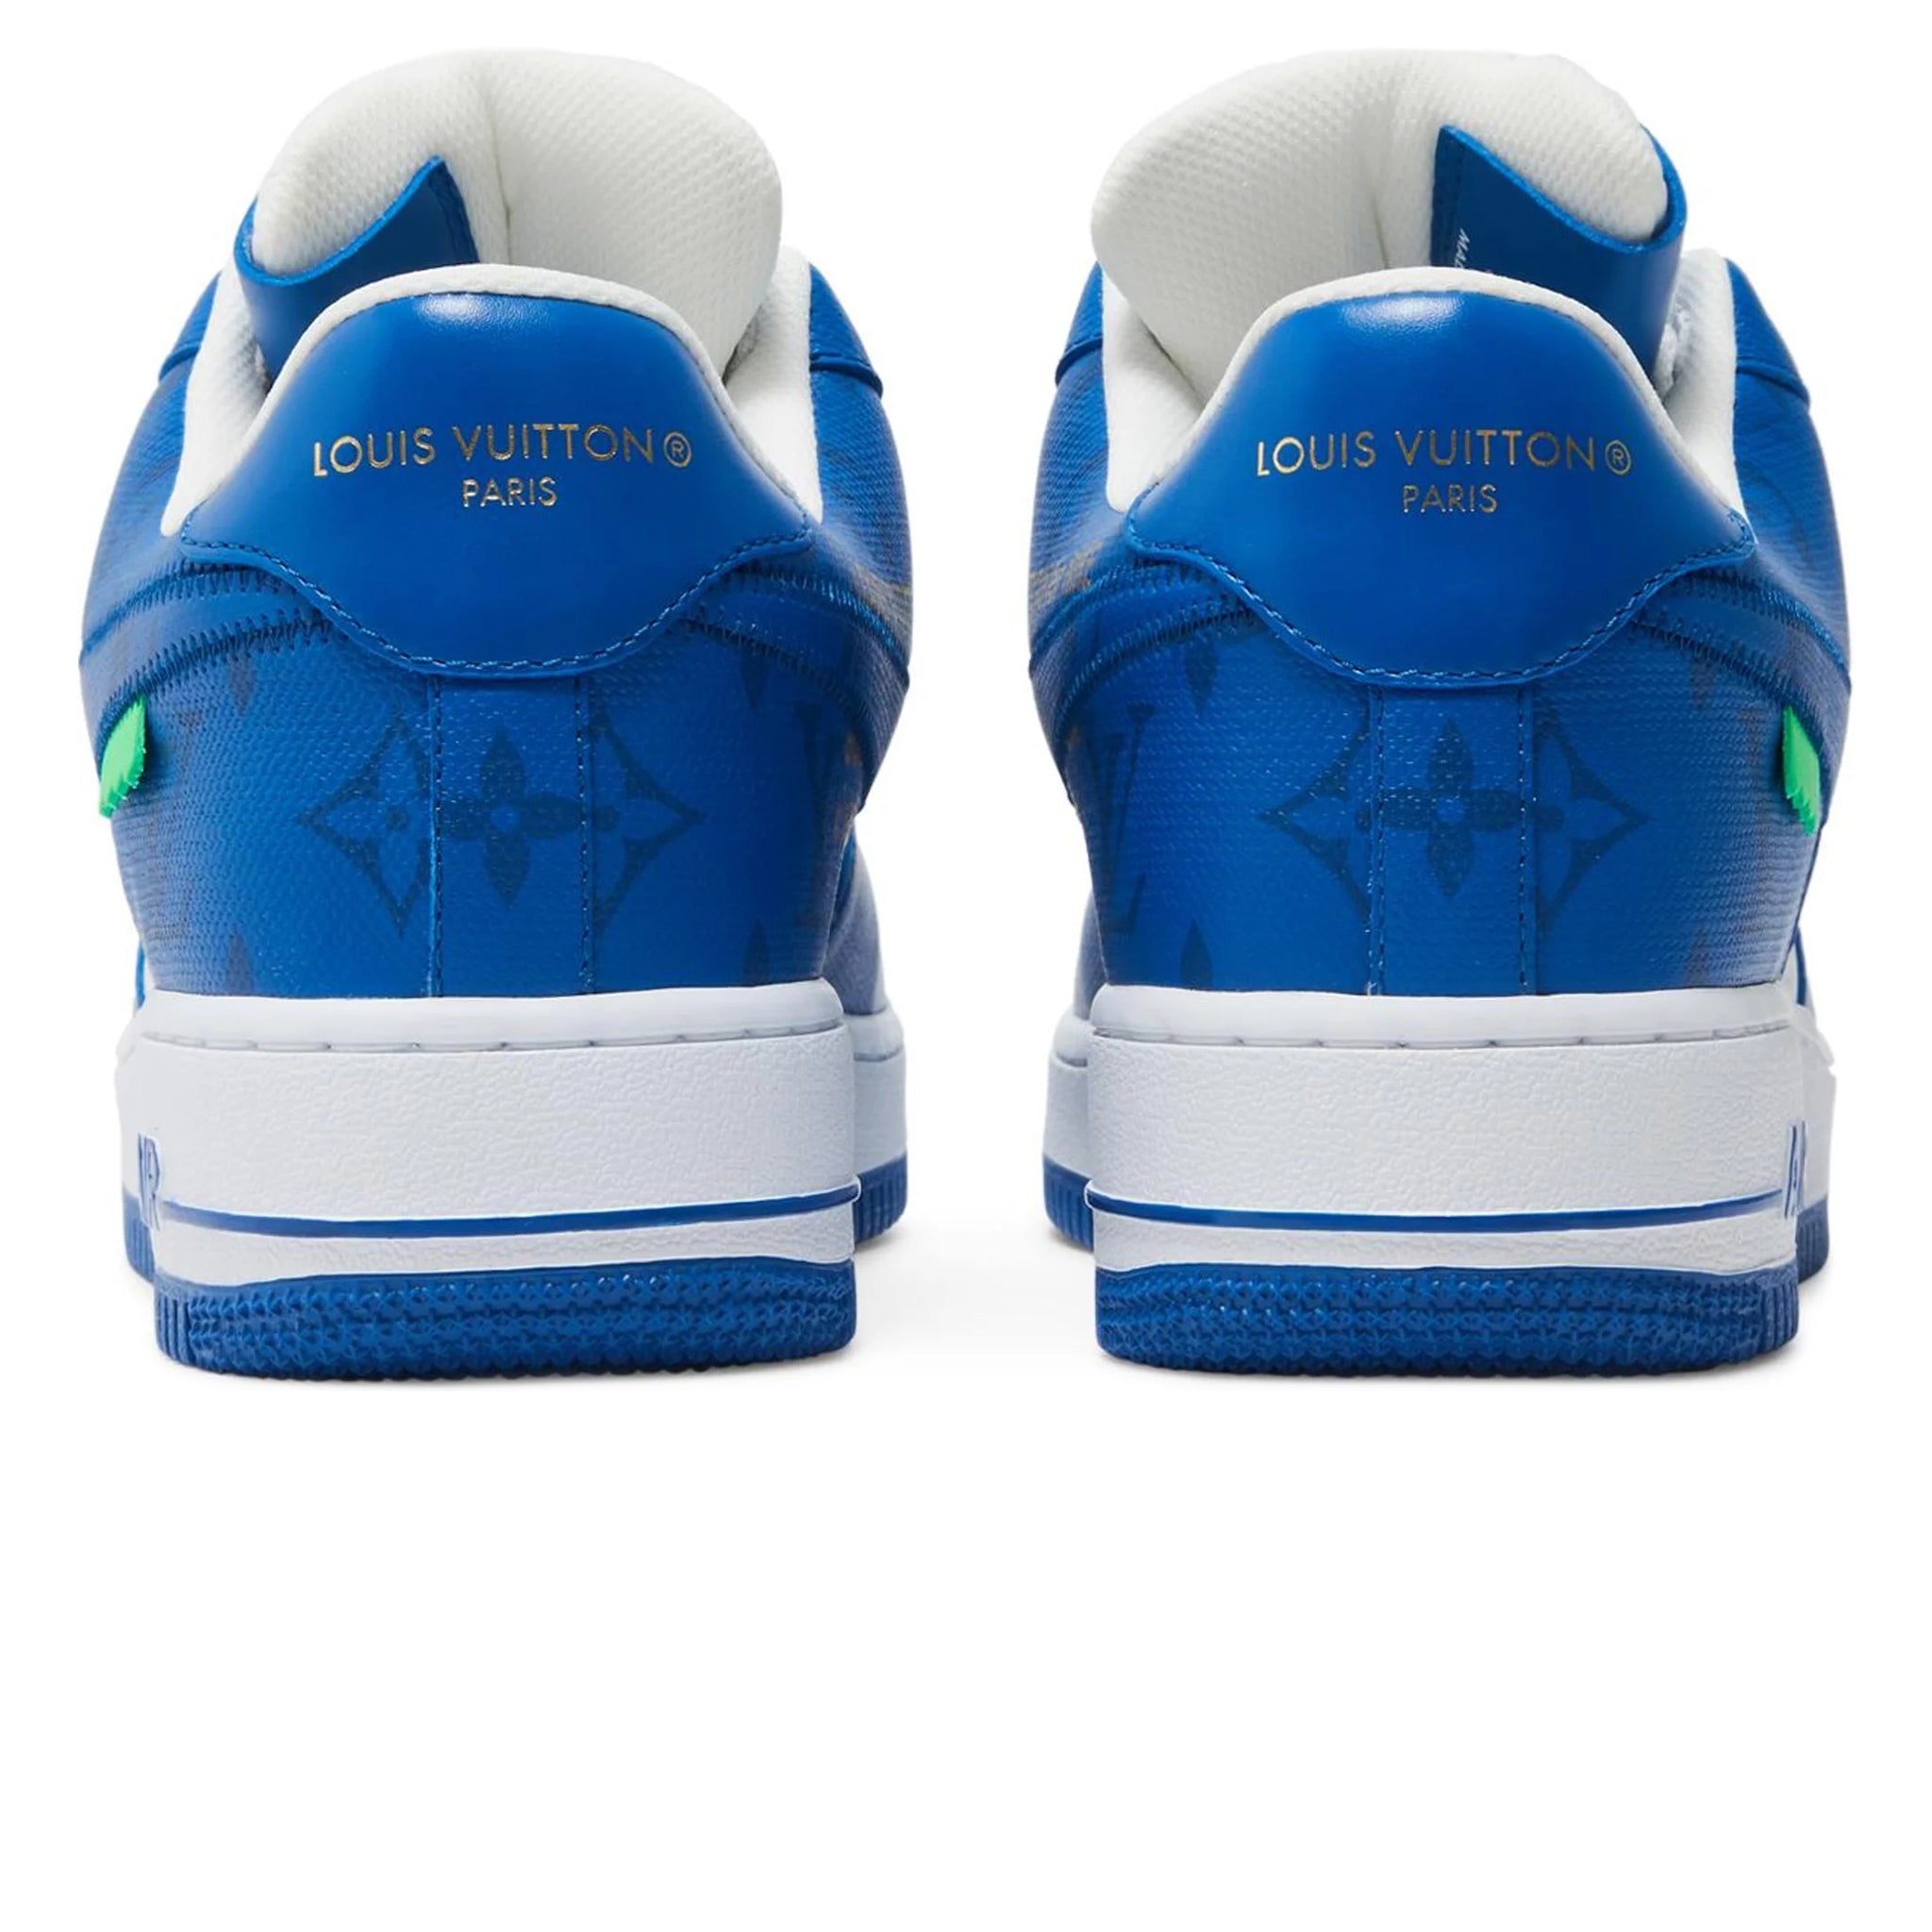 Louis Vuitton Nike Air Force 1 Low White Royal Blue Size UK 10- EU 44.5- US 10.5